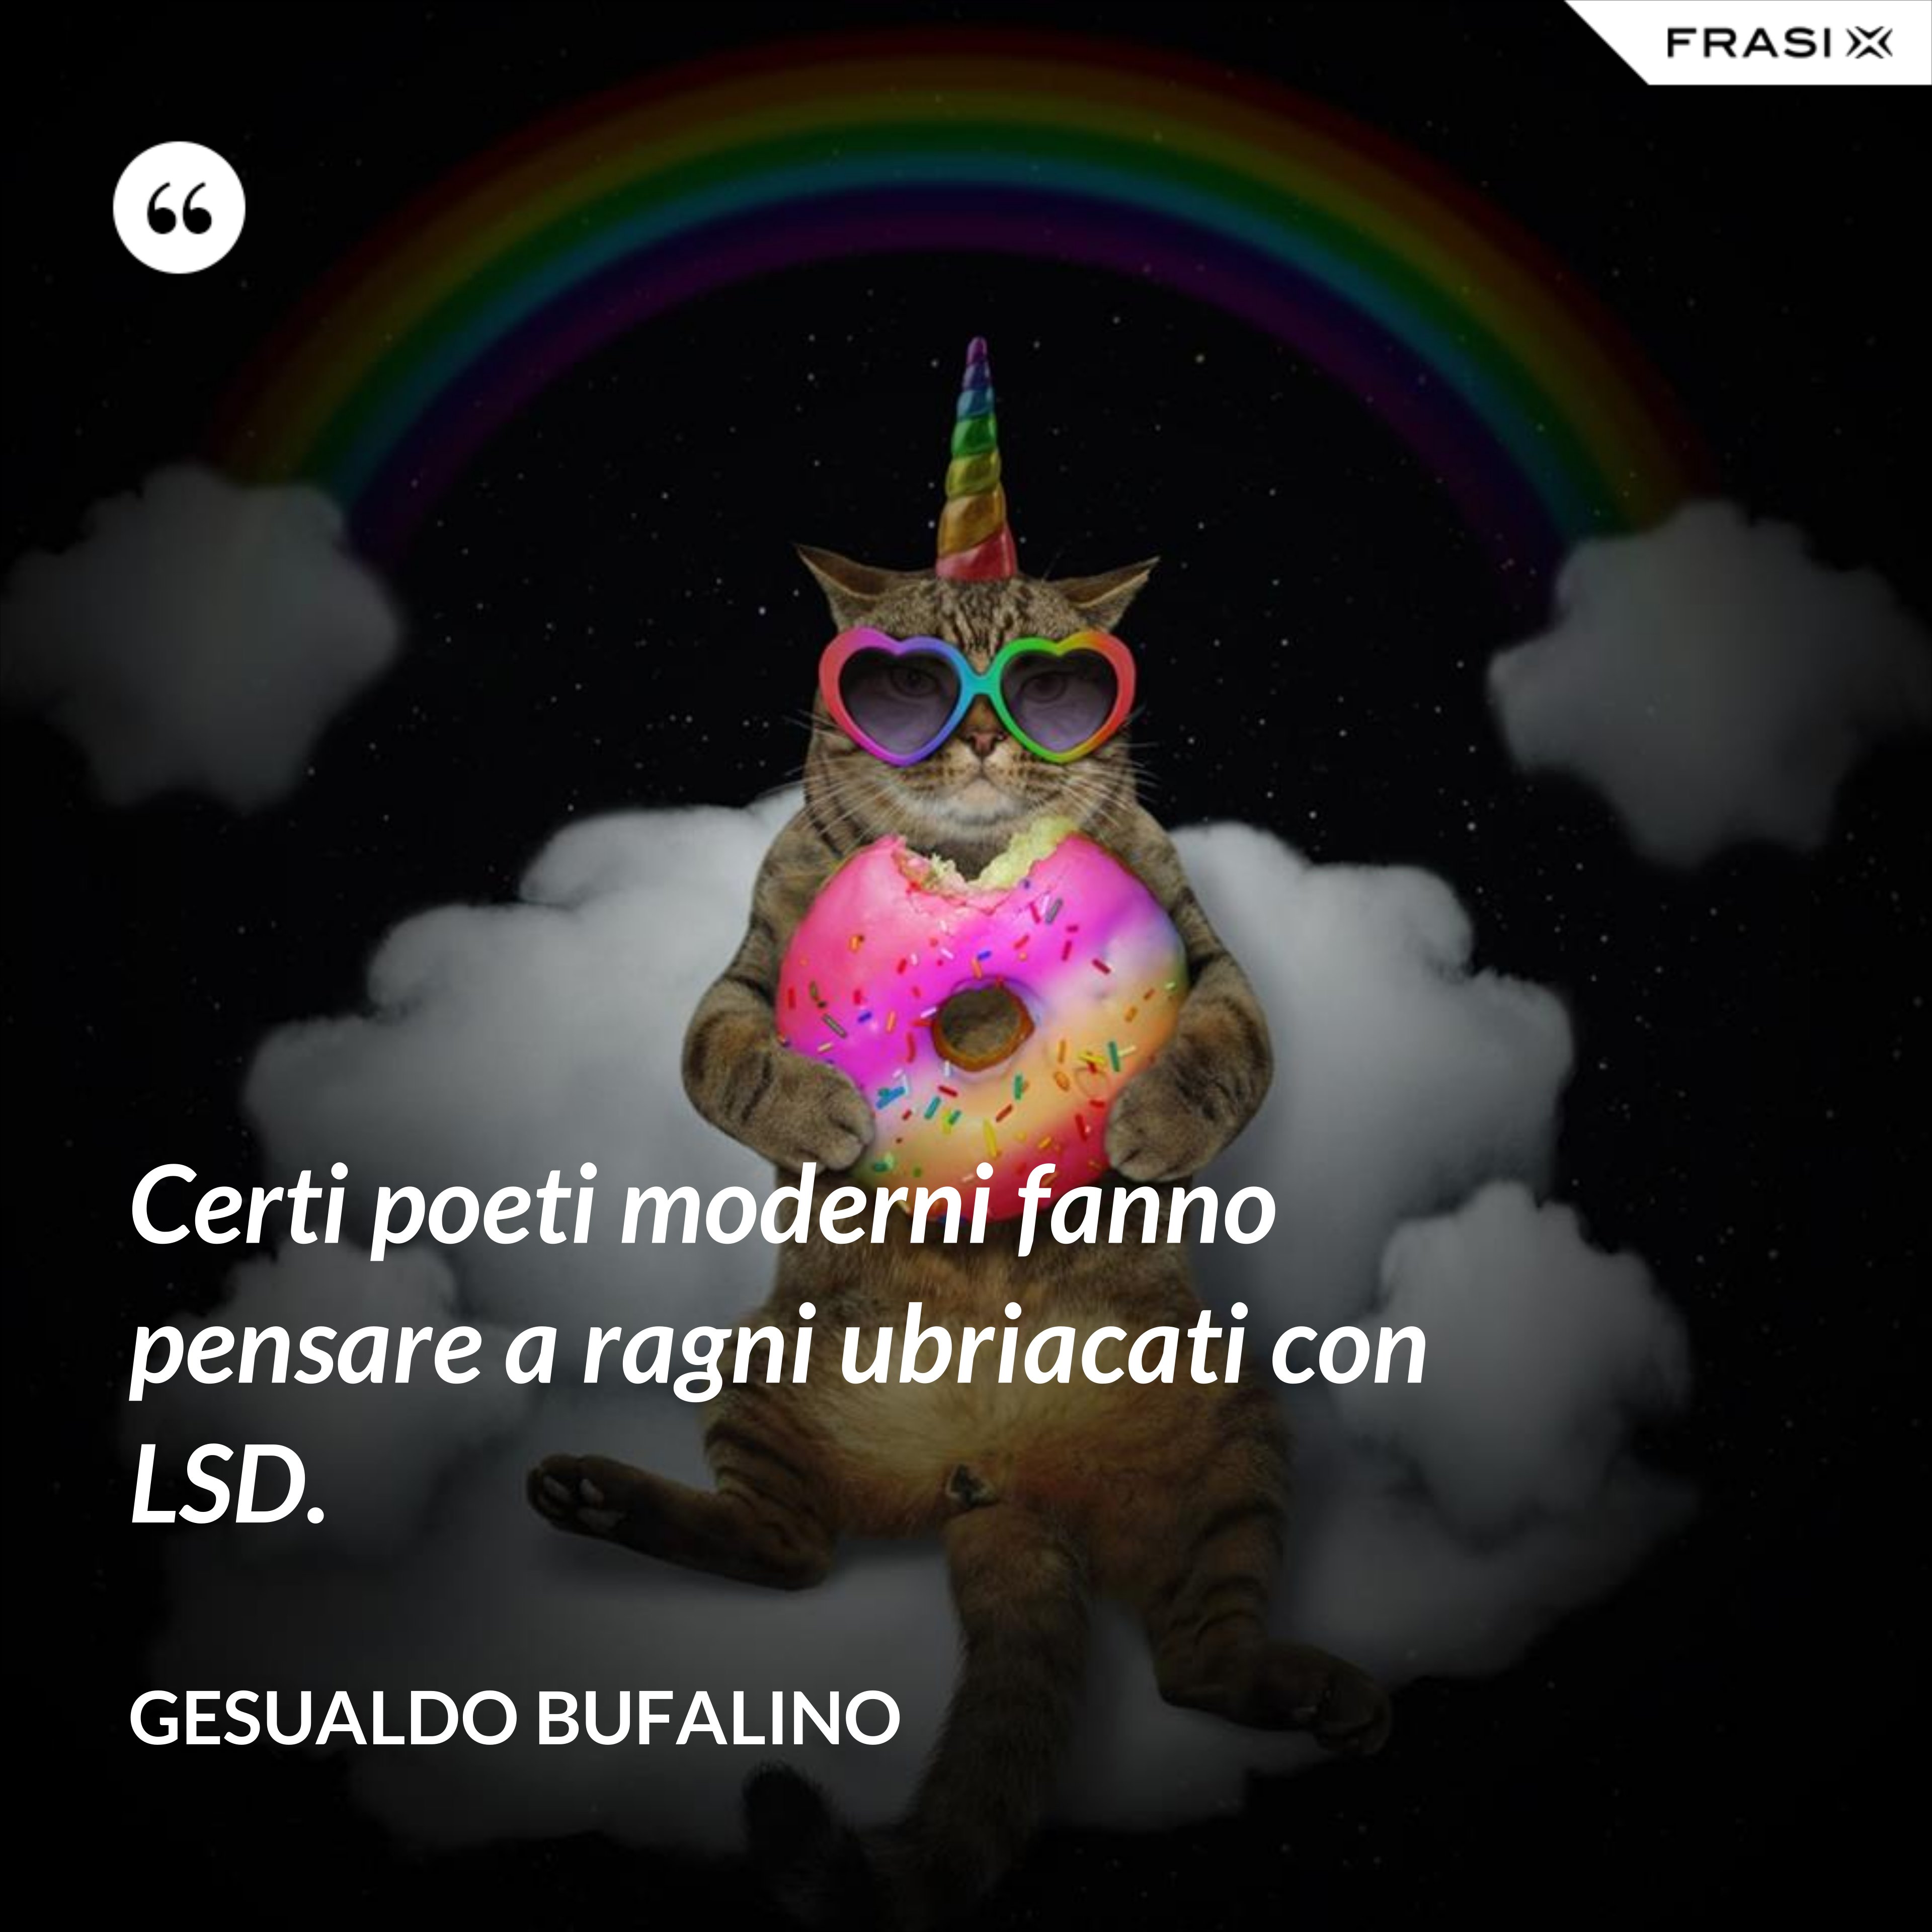 Certi poeti moderni fanno pensare a ragni ubriacati con LSD. - Gesualdo Bufalino